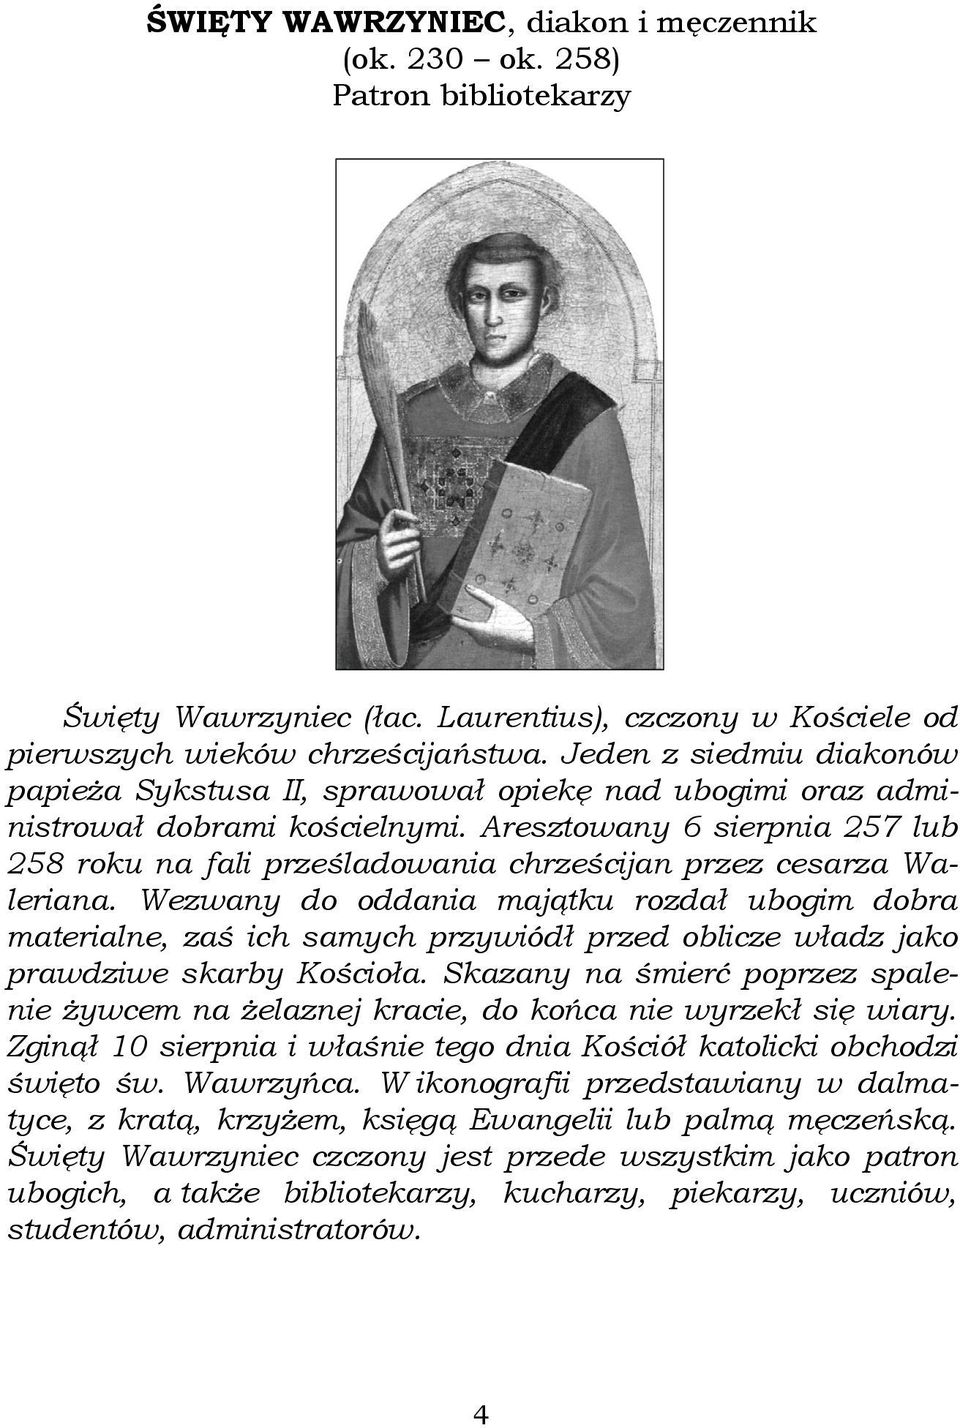 Aresztowany 6 sierpnia 257 lub 258 roku na fali prześladowania chrześcijan przez cesarza Waleriana.